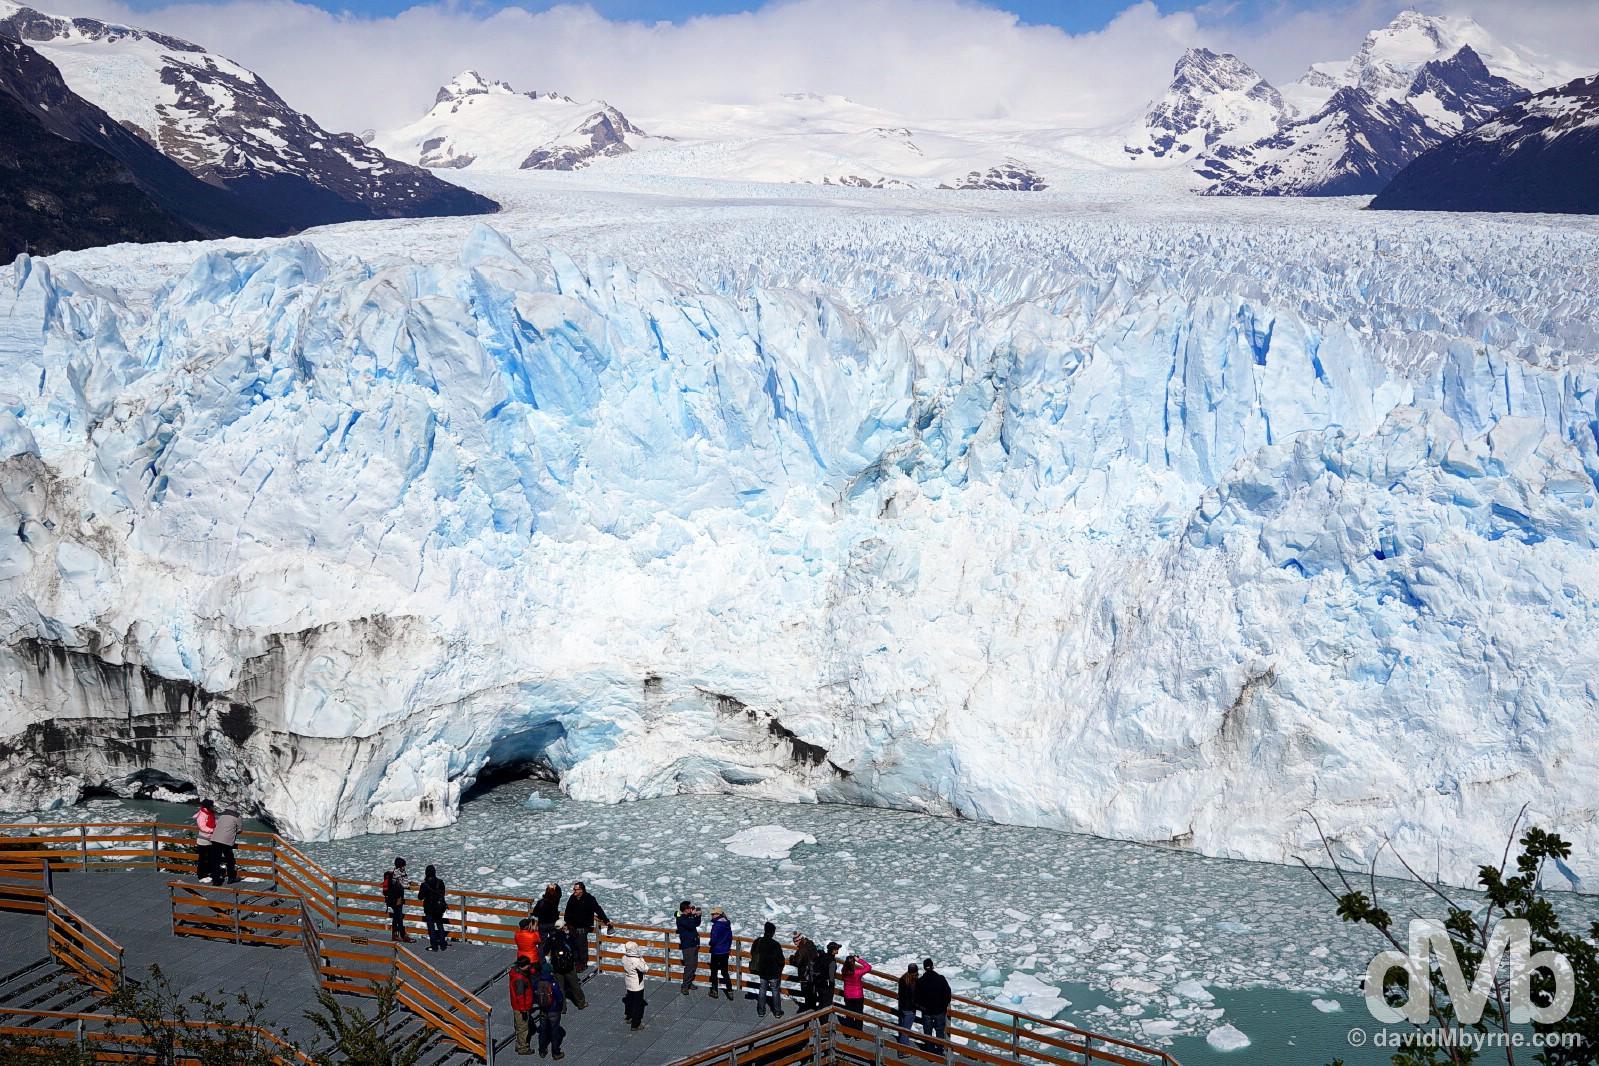 Viewing the Perito Moreno Glacier from the viewing platforms across the Canal de los Tempanos (Iceberg Channel) in Parque Nacional Los Glaciares, Patagonia, Argentina. November 2, 2015.